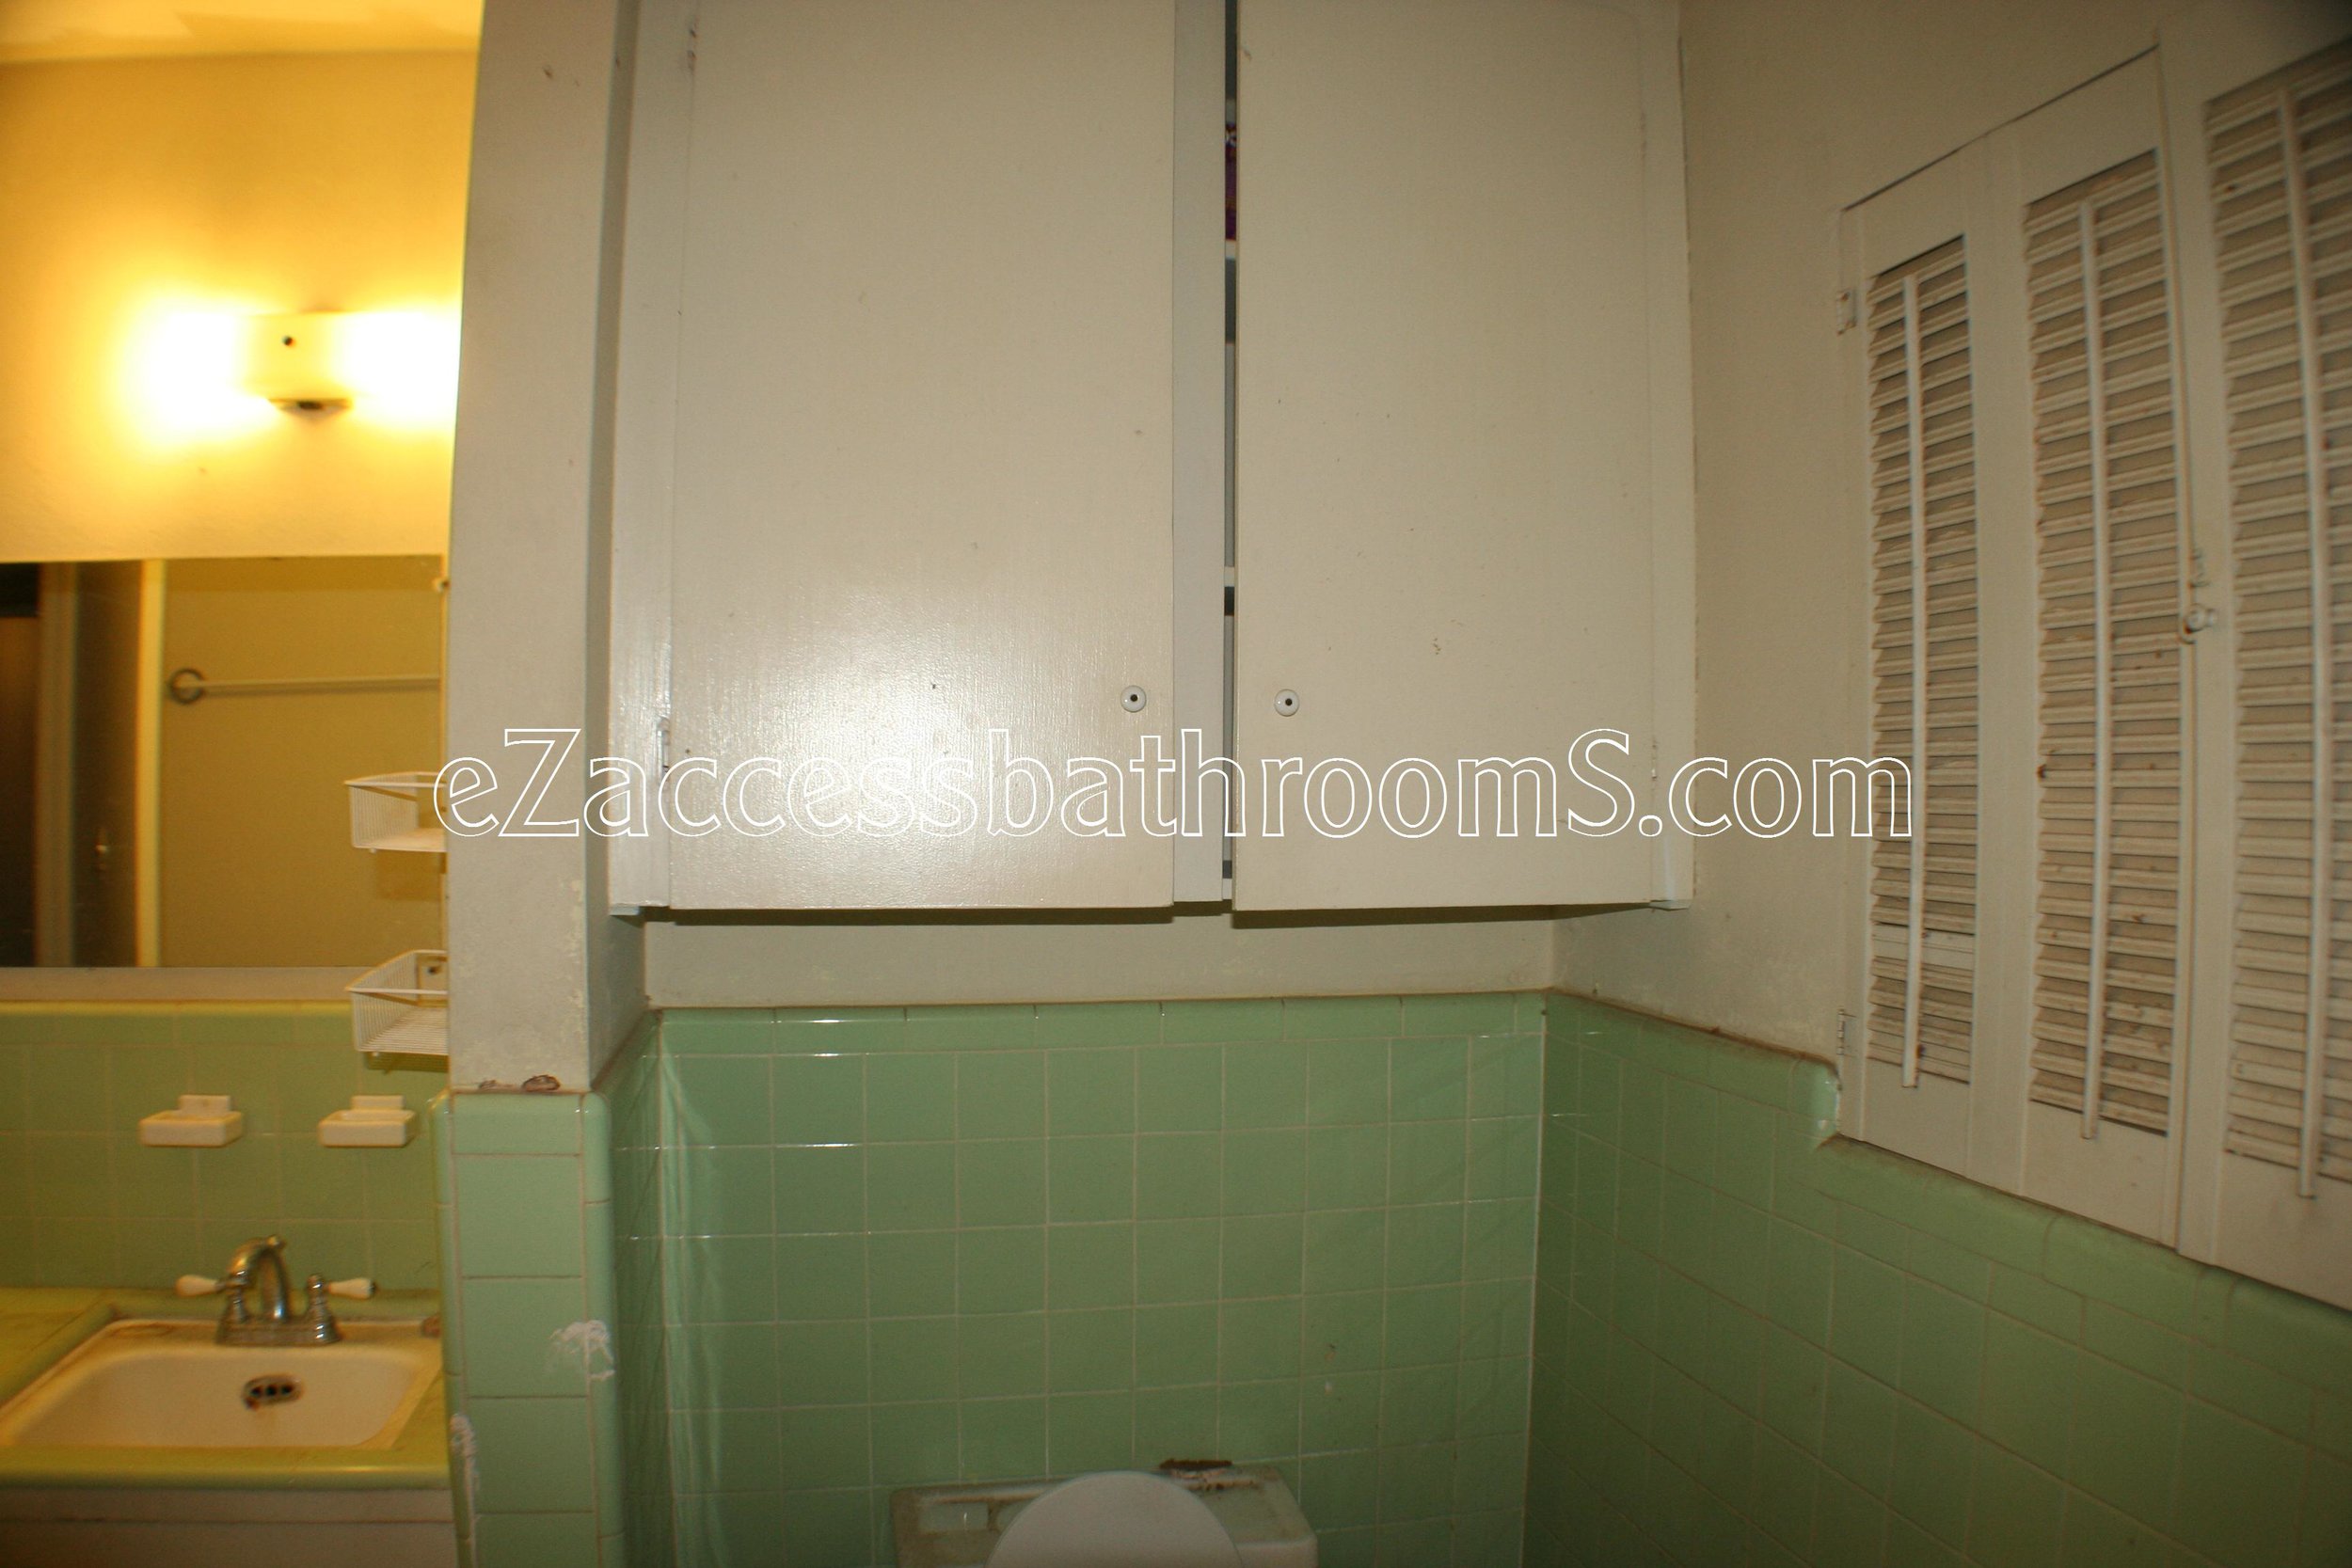 rollin shower ezaccessbathrooms.com 0009.JPG